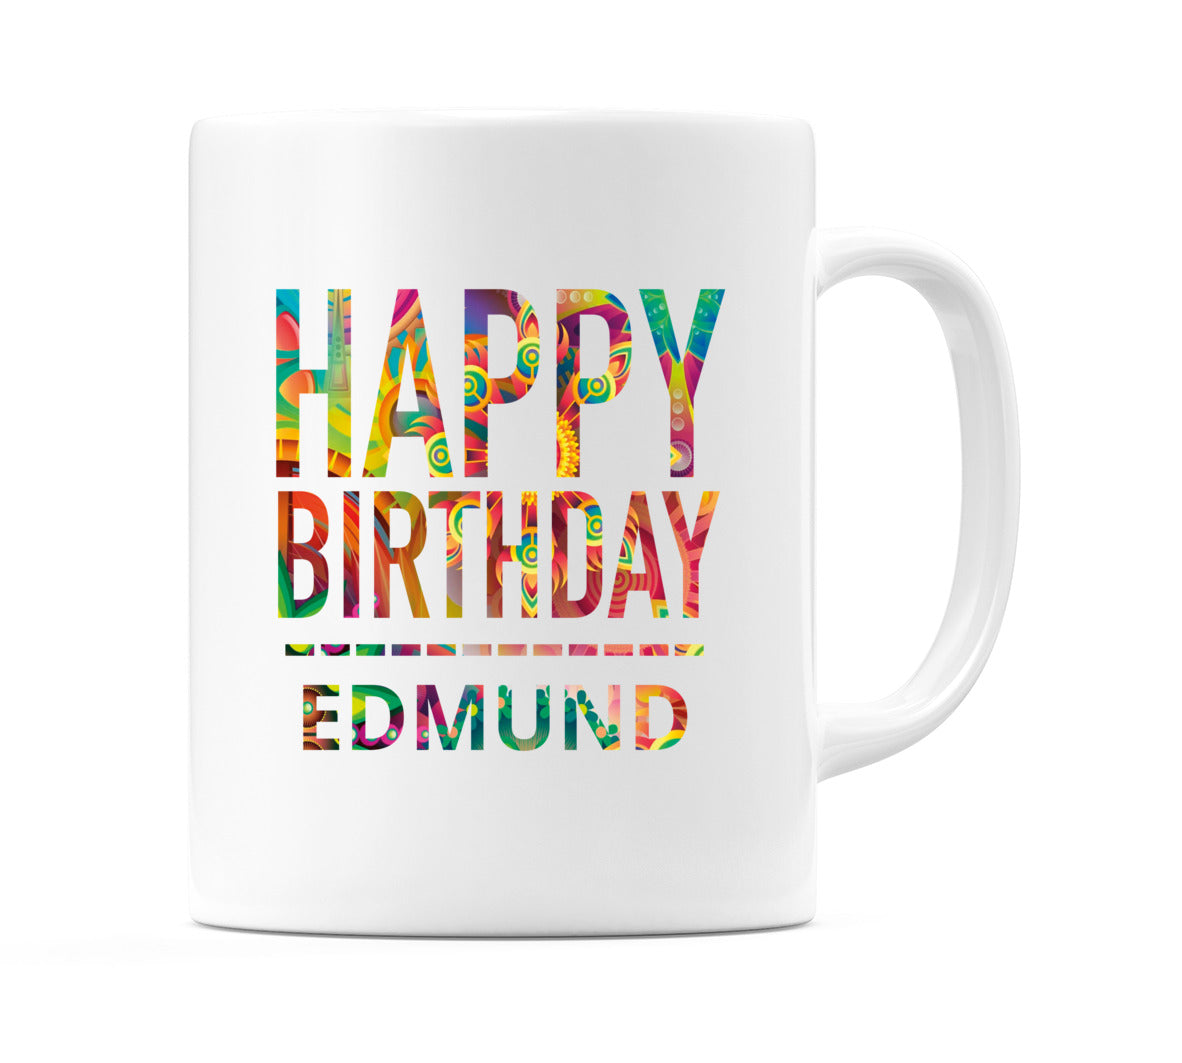 Happy Birthday Edmund (Tie Dye Effect) Mug Cup by WeDoMugs